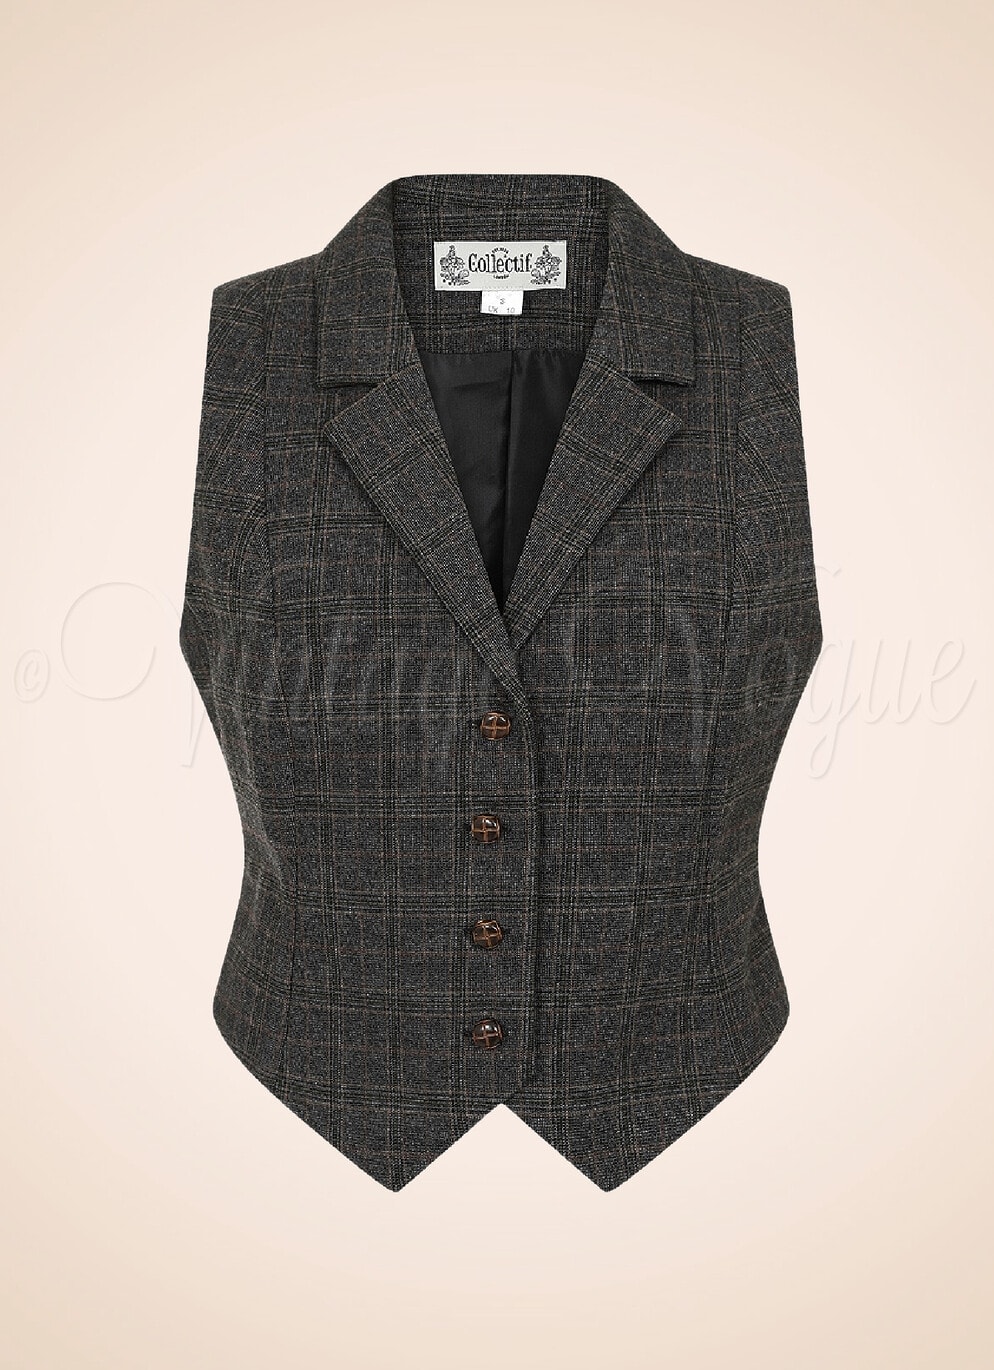 Collectif 40er Jahre Vintage Academia Dandy Weste Professor Check Waistcoat in Grau